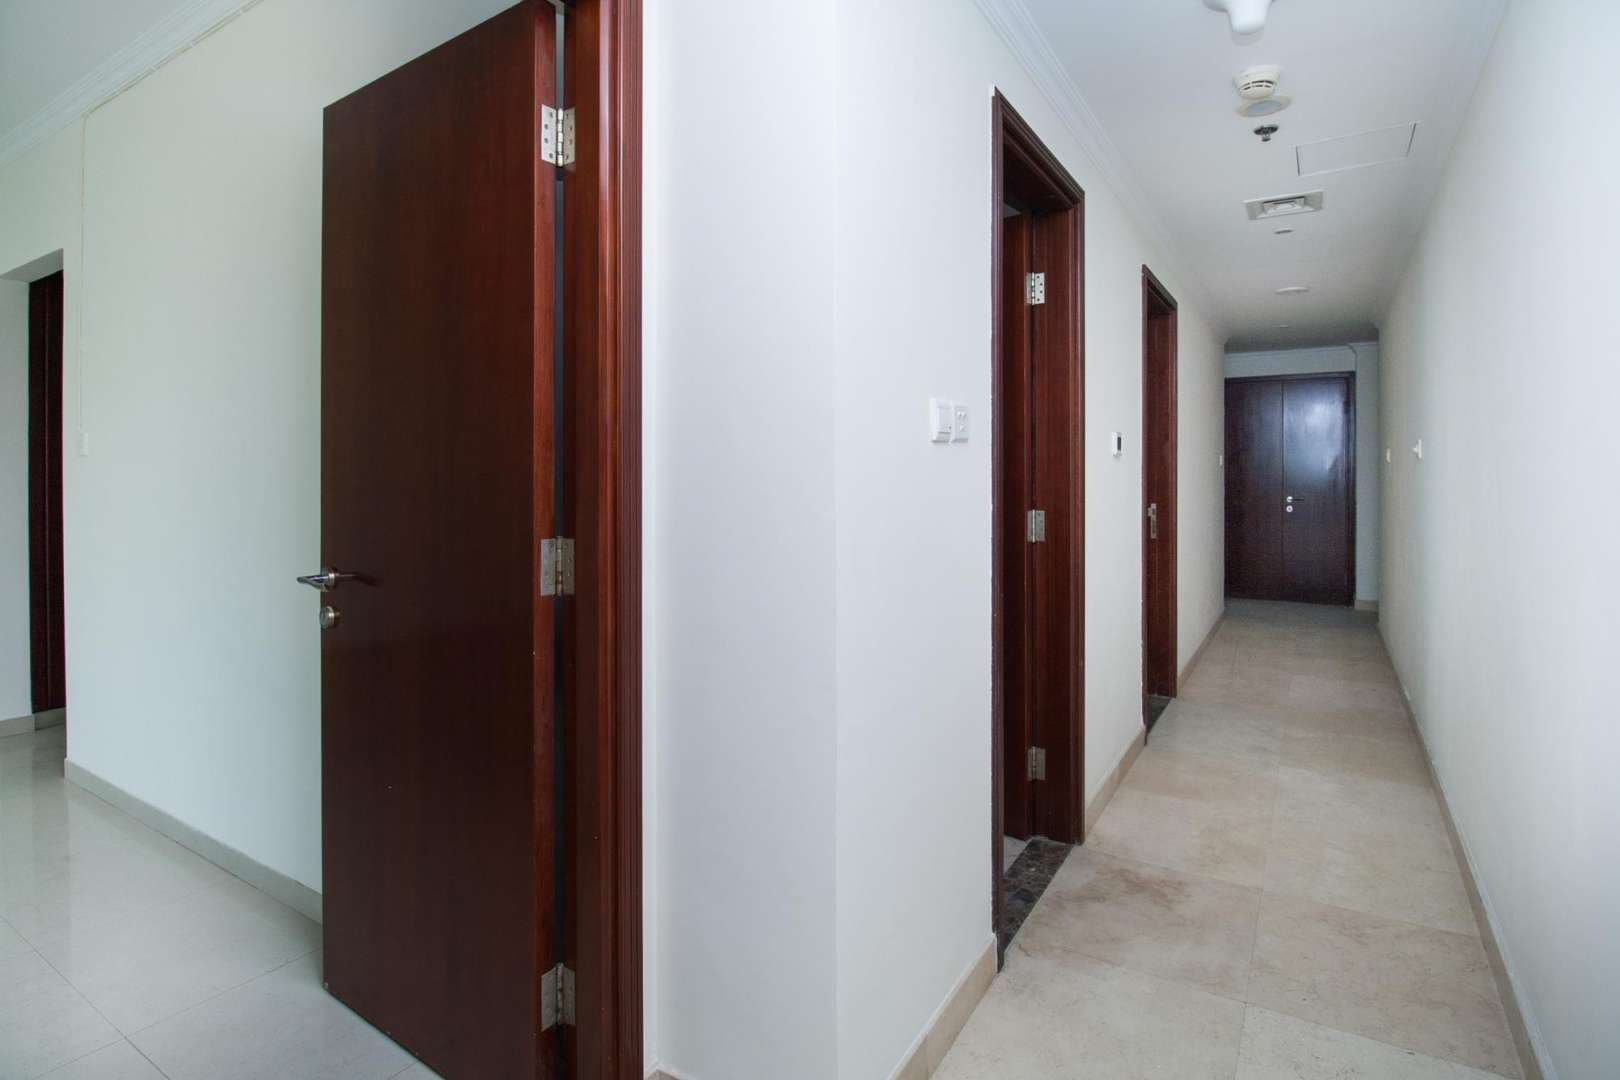 3 Bedroom Apartment For Rent The Zen Tower Lp05443 Ad467071d776180.jpg